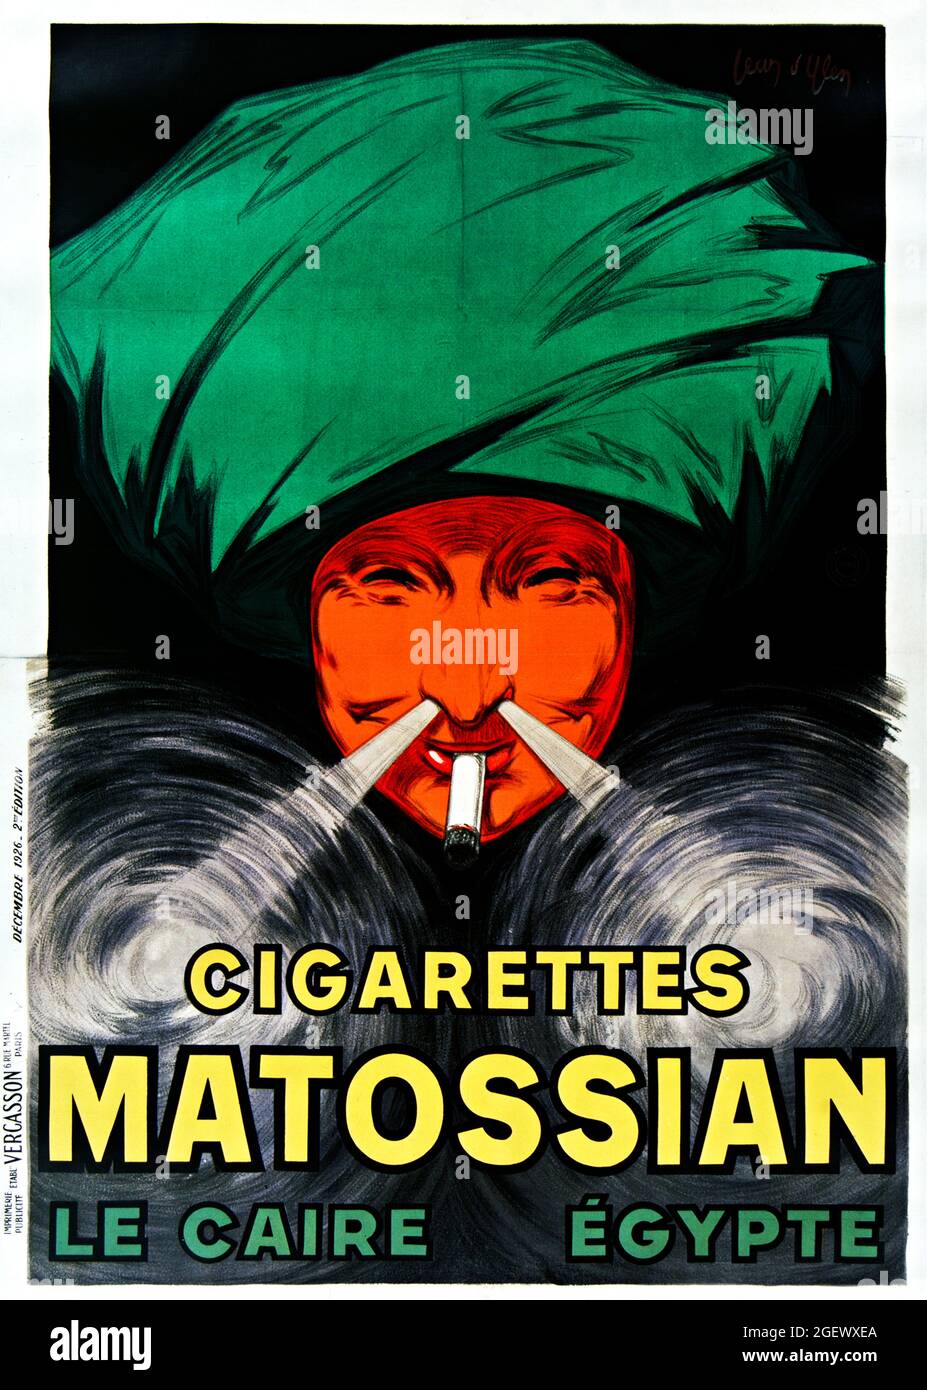 Sigarette Matossiane – le Caire, Egypte (1926) Poster d’epoca - Jean d’Ylen. Poster pubblicitario di tabacco. Foto Stock